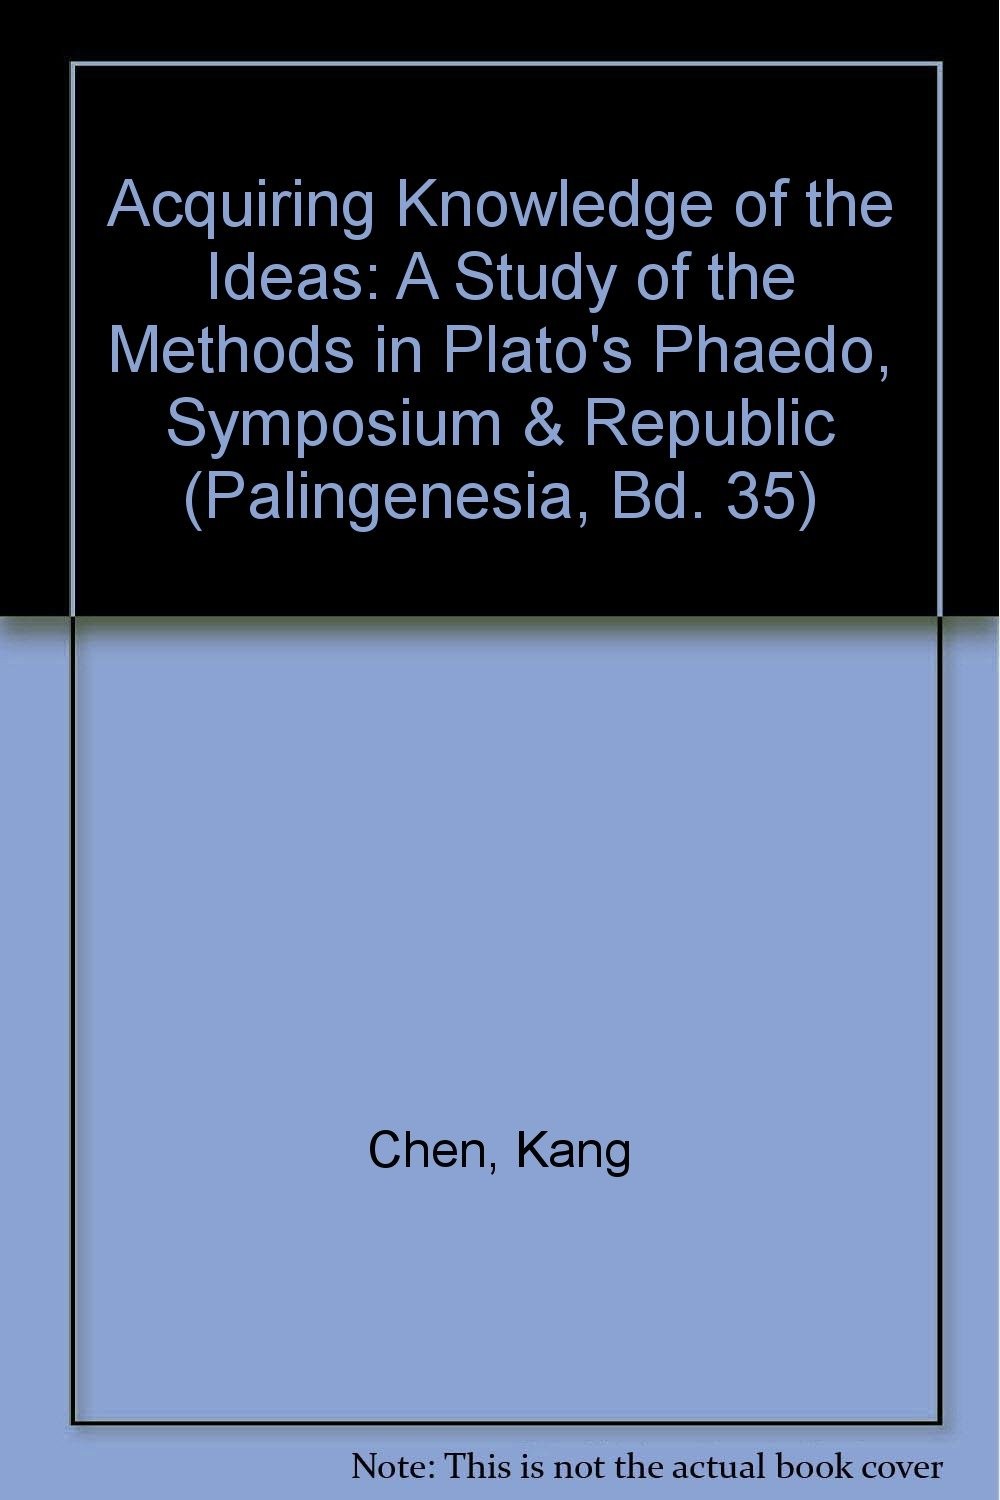 Acquiring Knowledge of the Ideas: A Study of the Methods in Plato's Phaedo, Symposium & Republic